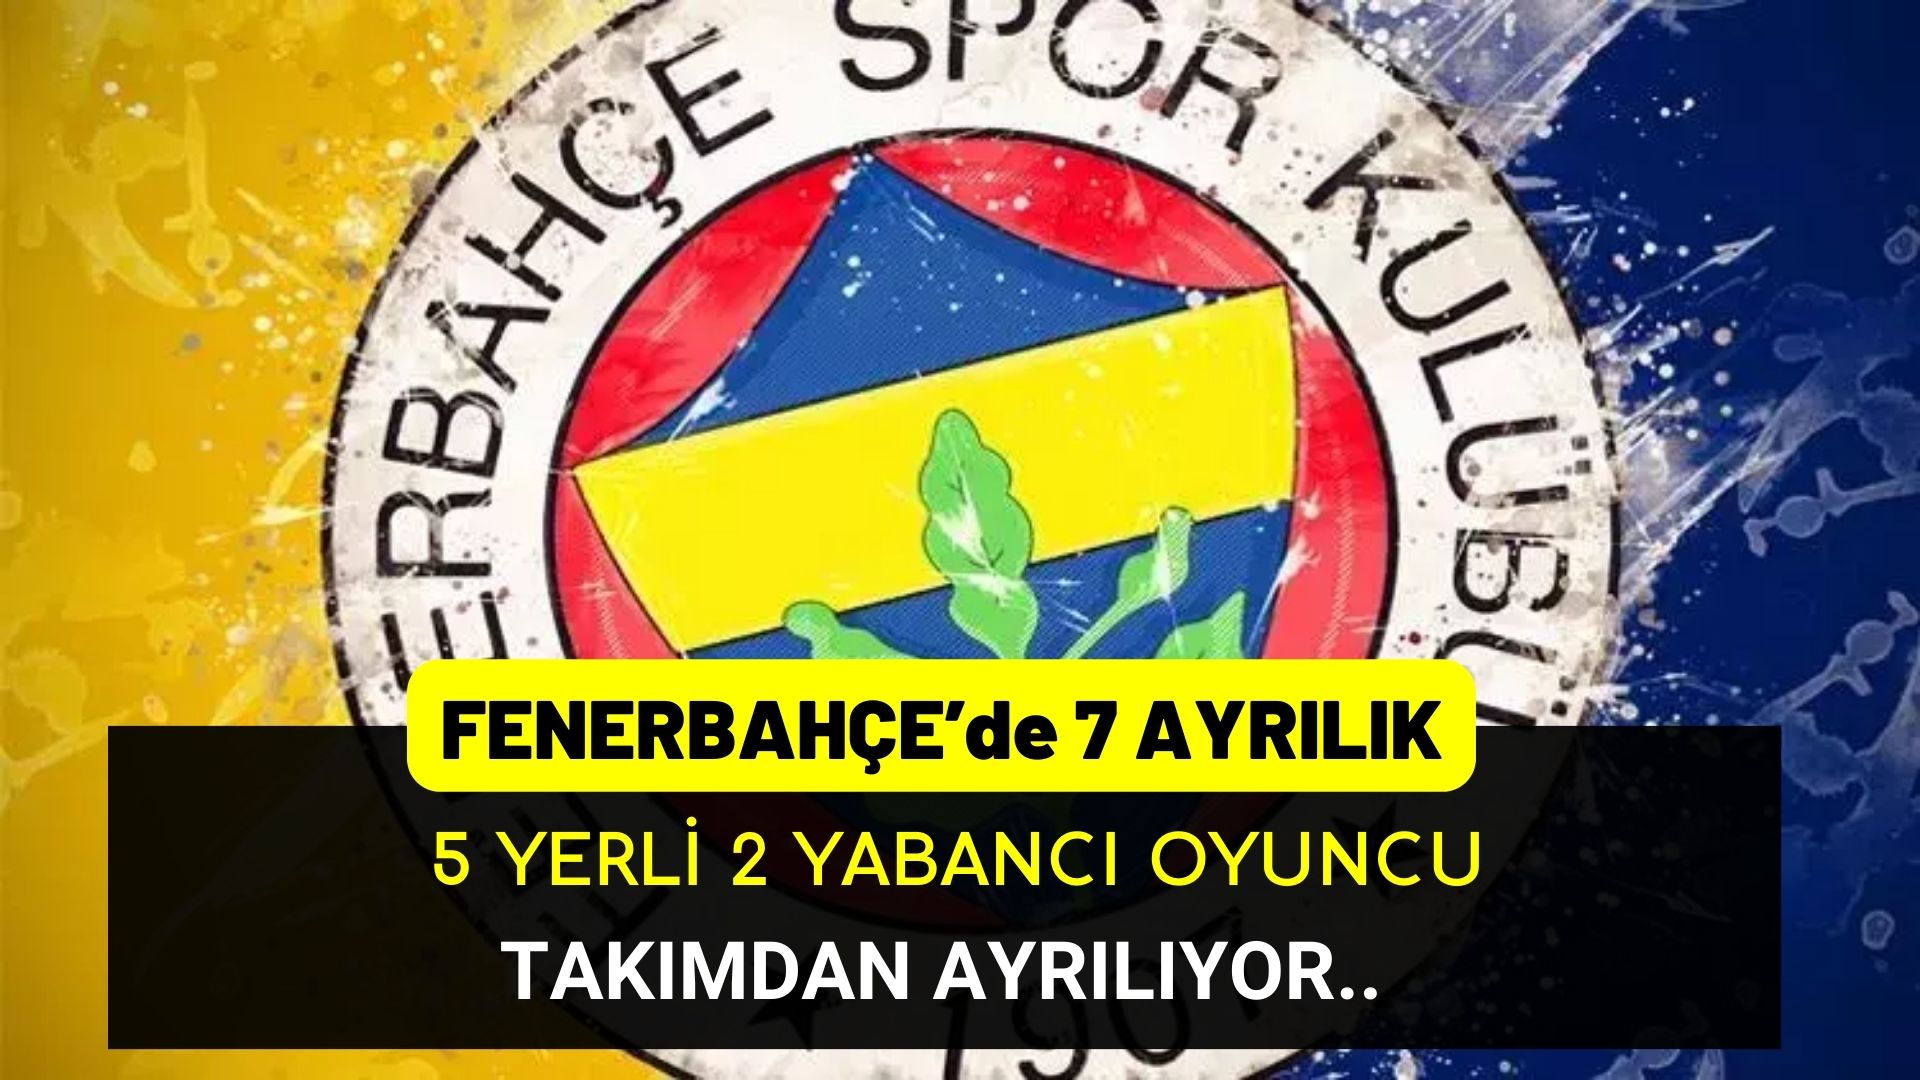 Fenerbahçe’de 5 yerli 2 yabancı 7 oyuncu ayrılıyor!